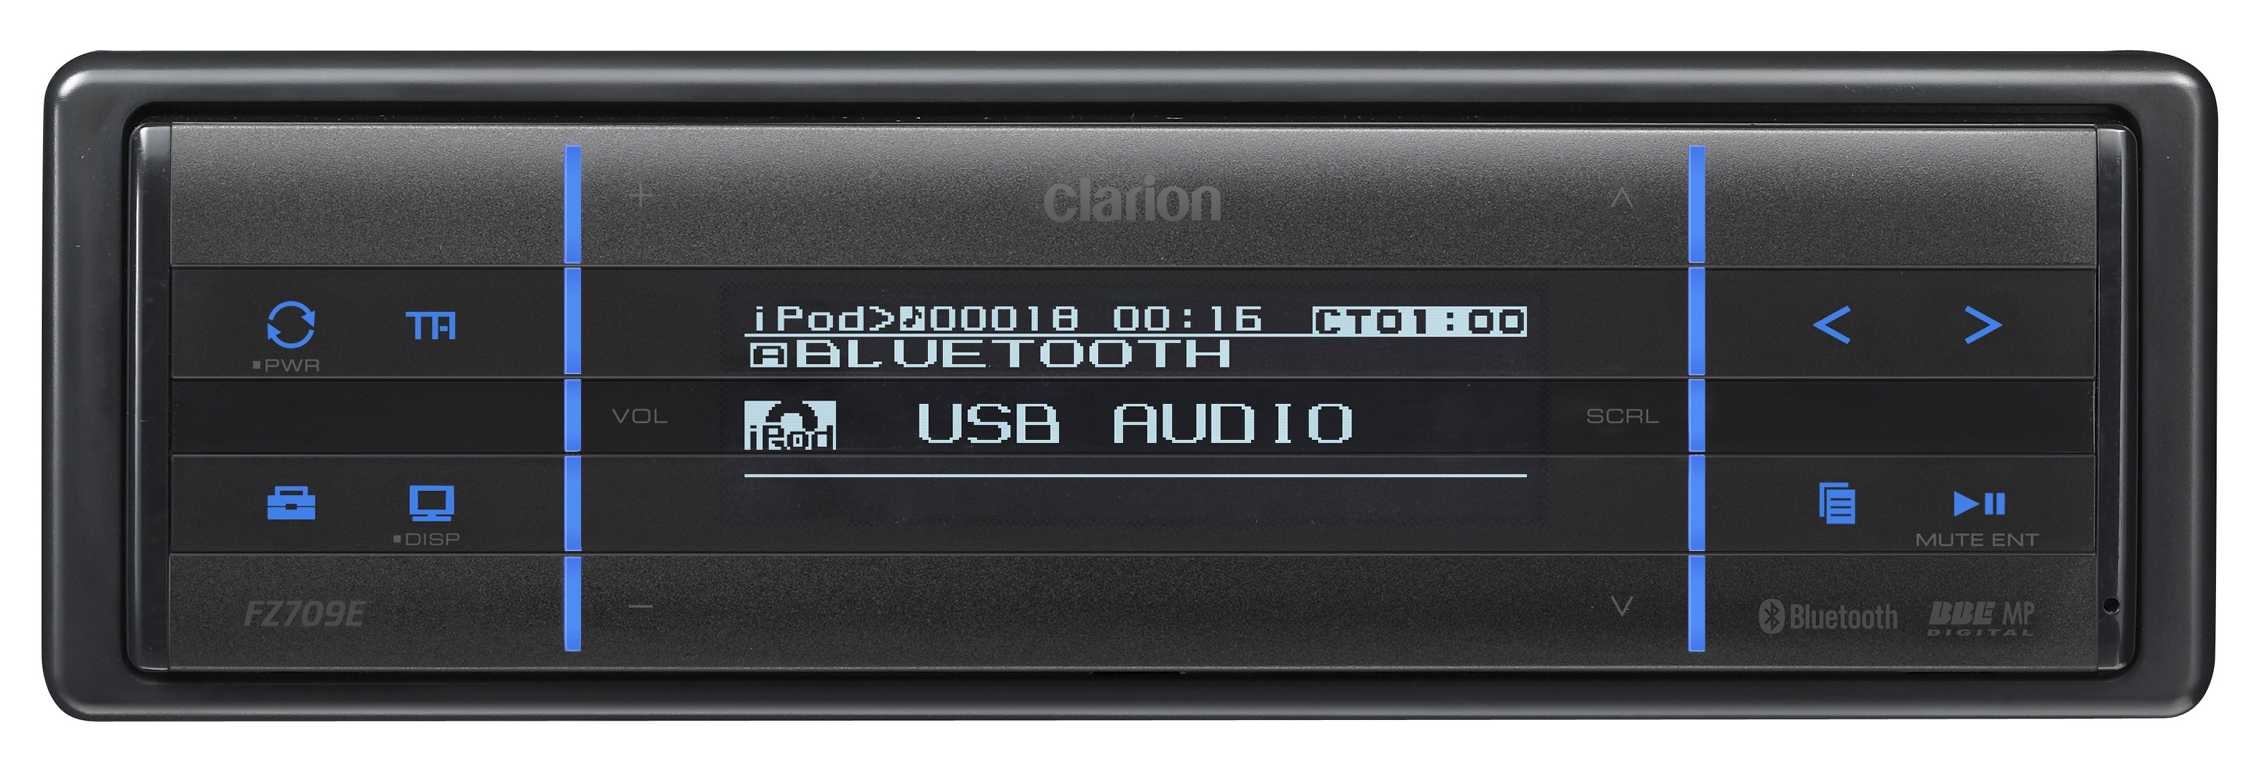 Radio-USB FZ709E hopea mp3/wma/hf/bt-valm